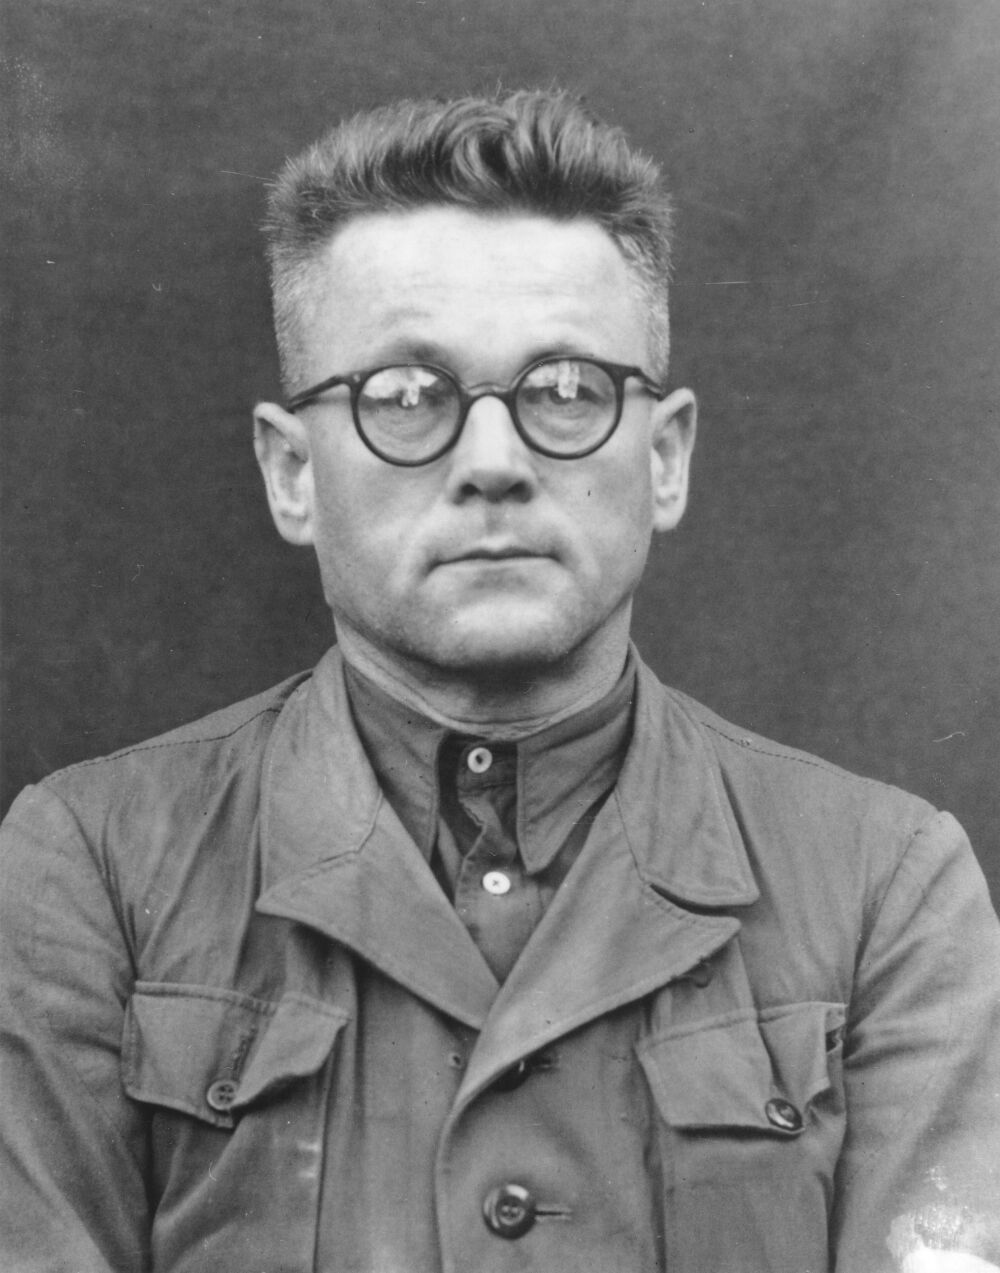 Dr. Karl Gebhardt leitete die Experimente an polnischen Frauen im Konzentrationslager Ravensbrück. Er glaubte eigentlich nicht, dass das verwendete Arzneimittel, Sulfonamid, Wirkung haben würde. Die Menschenversuche führte er trotzdem durch, wahrscheinlich, weil er einem Kollegen beweisen wollte, dass er Recht hatte. Gegen Ende des Krieges versuchte Gebhardt zu fliehen. Er wurde gefasst und musste sich im Nürnberger Ärzteprozess unter anderem wegen Verbrechen gegen die Menschlichkeit verantworten. Karl Gebhardt wurde schuldig gesprochen und 1947 zum Tode verurteilt.